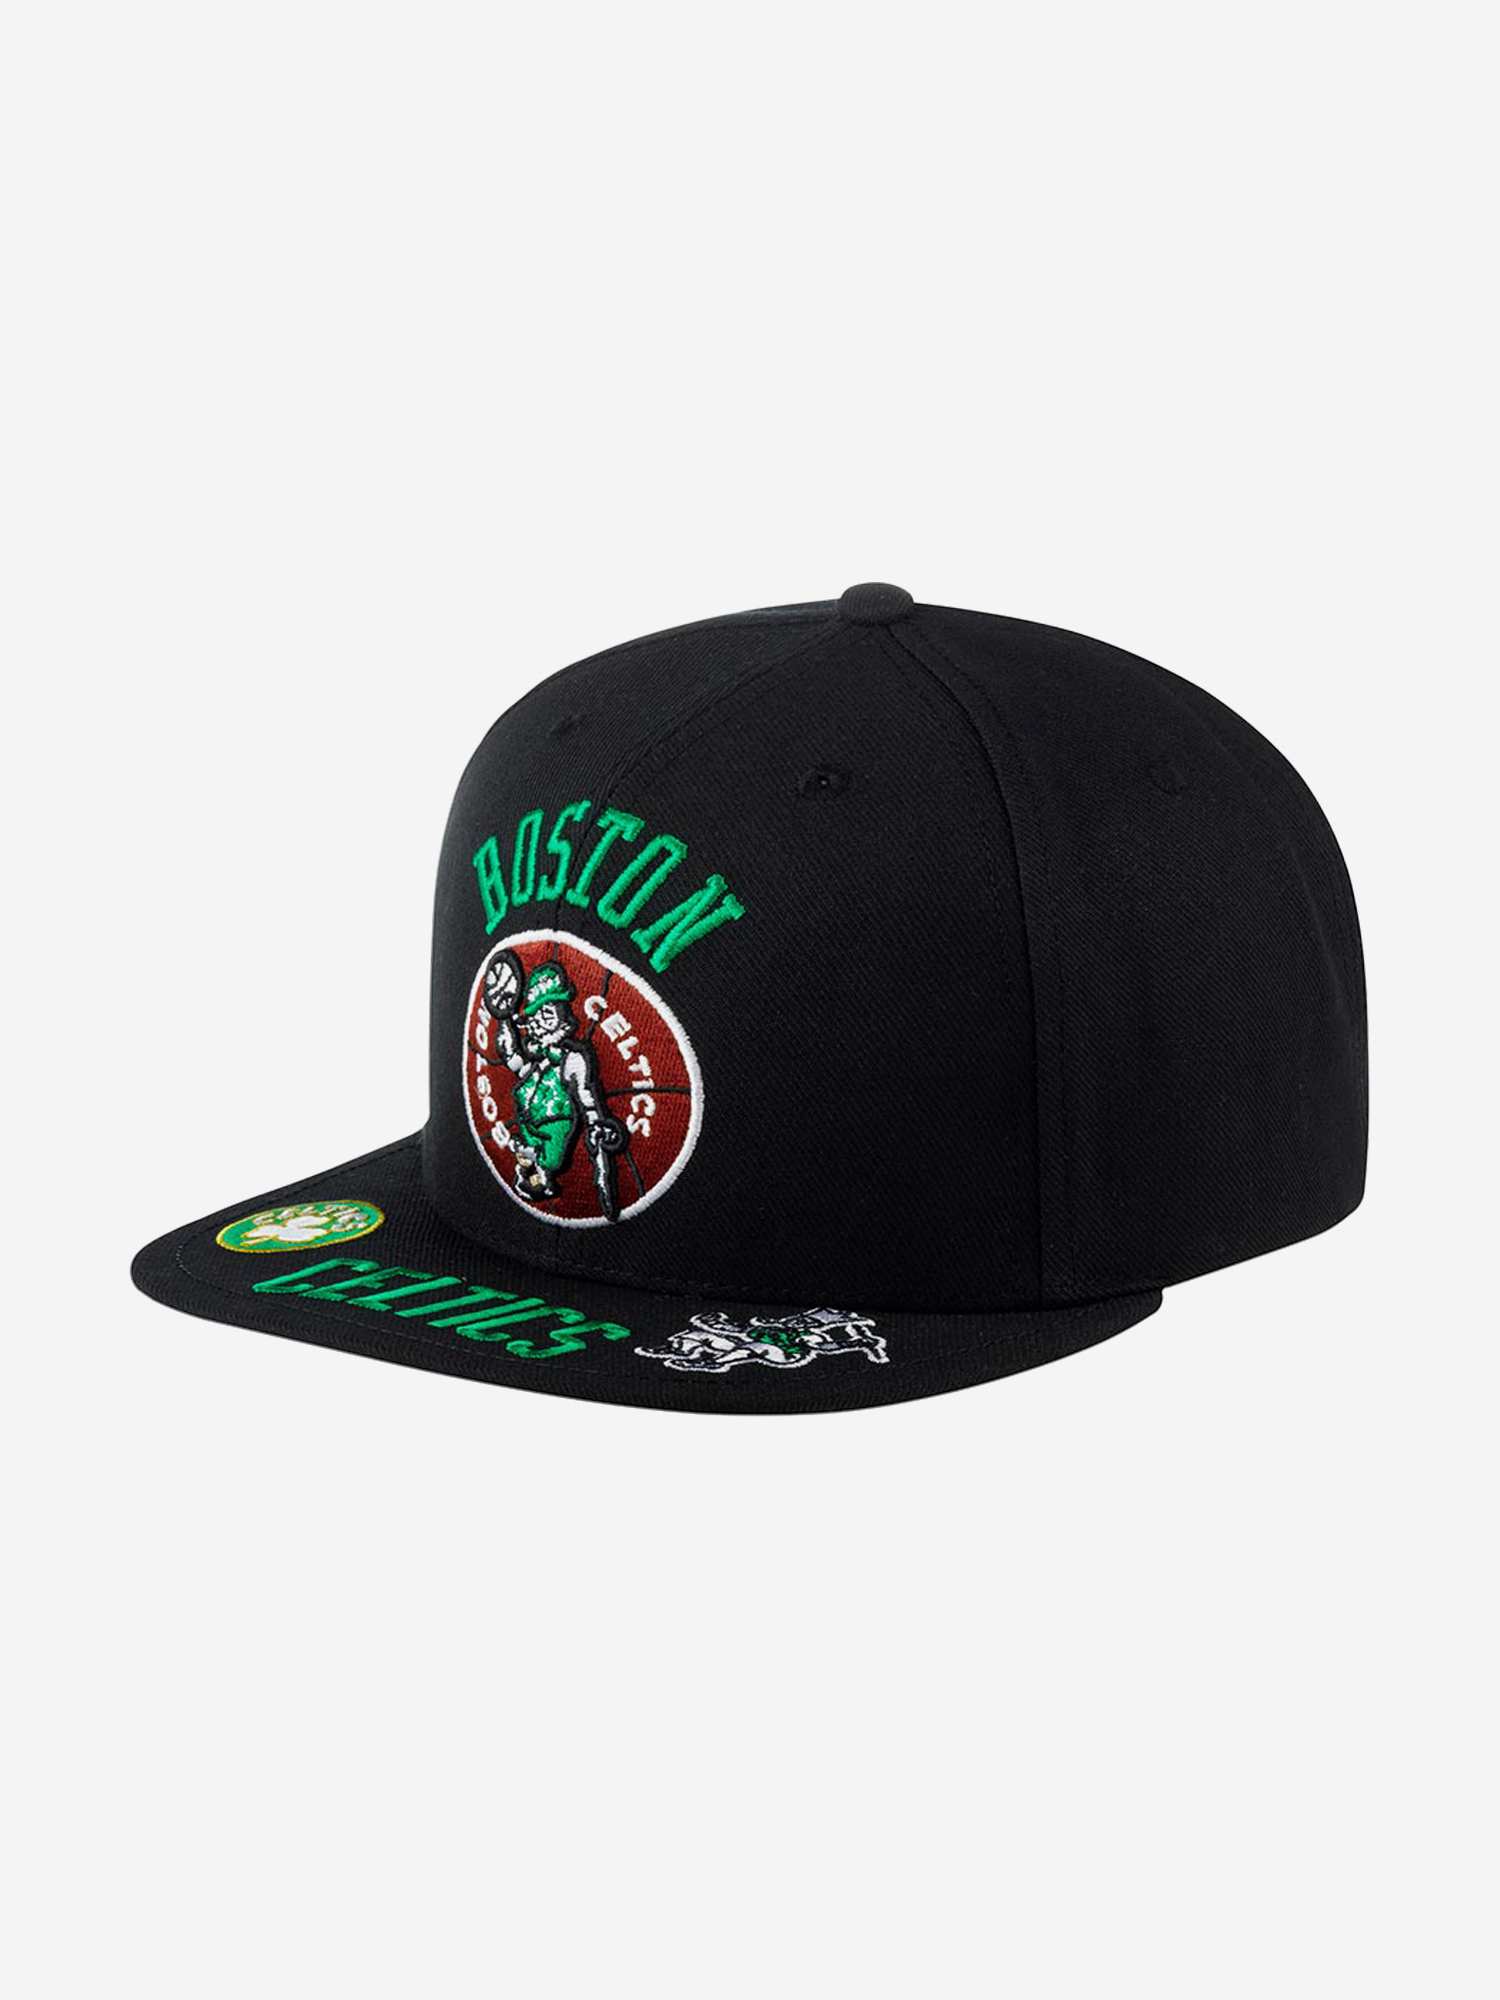 Бейсболка с прямым козырьком MITCHELL NESS HHSS2997-BCEYYPPPBLCK Boston Celtics NBA (черный), Черный